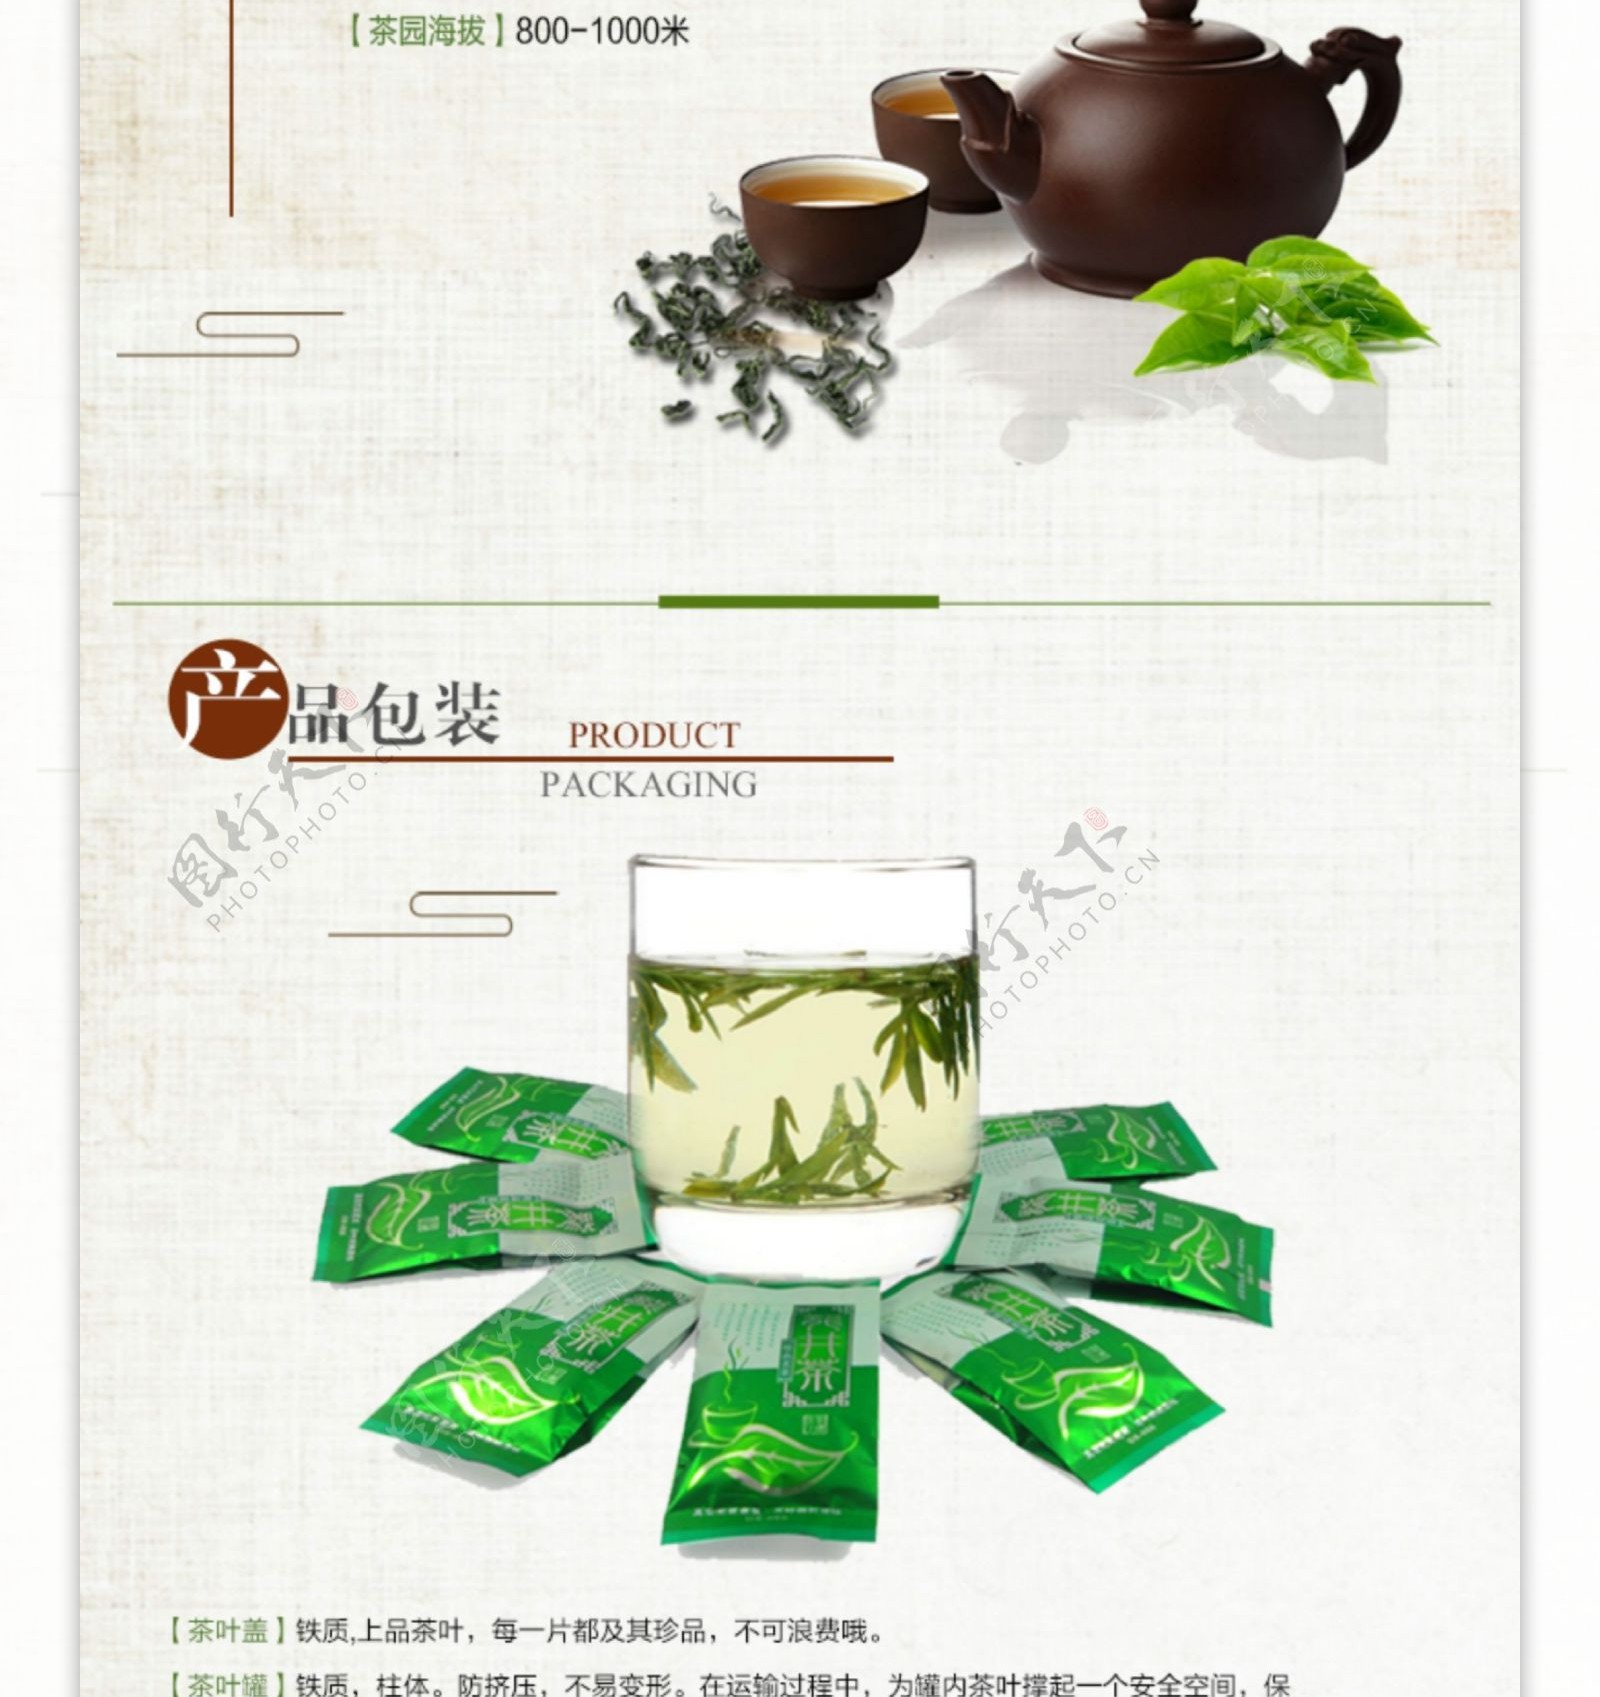 创意绿茶详情页模板